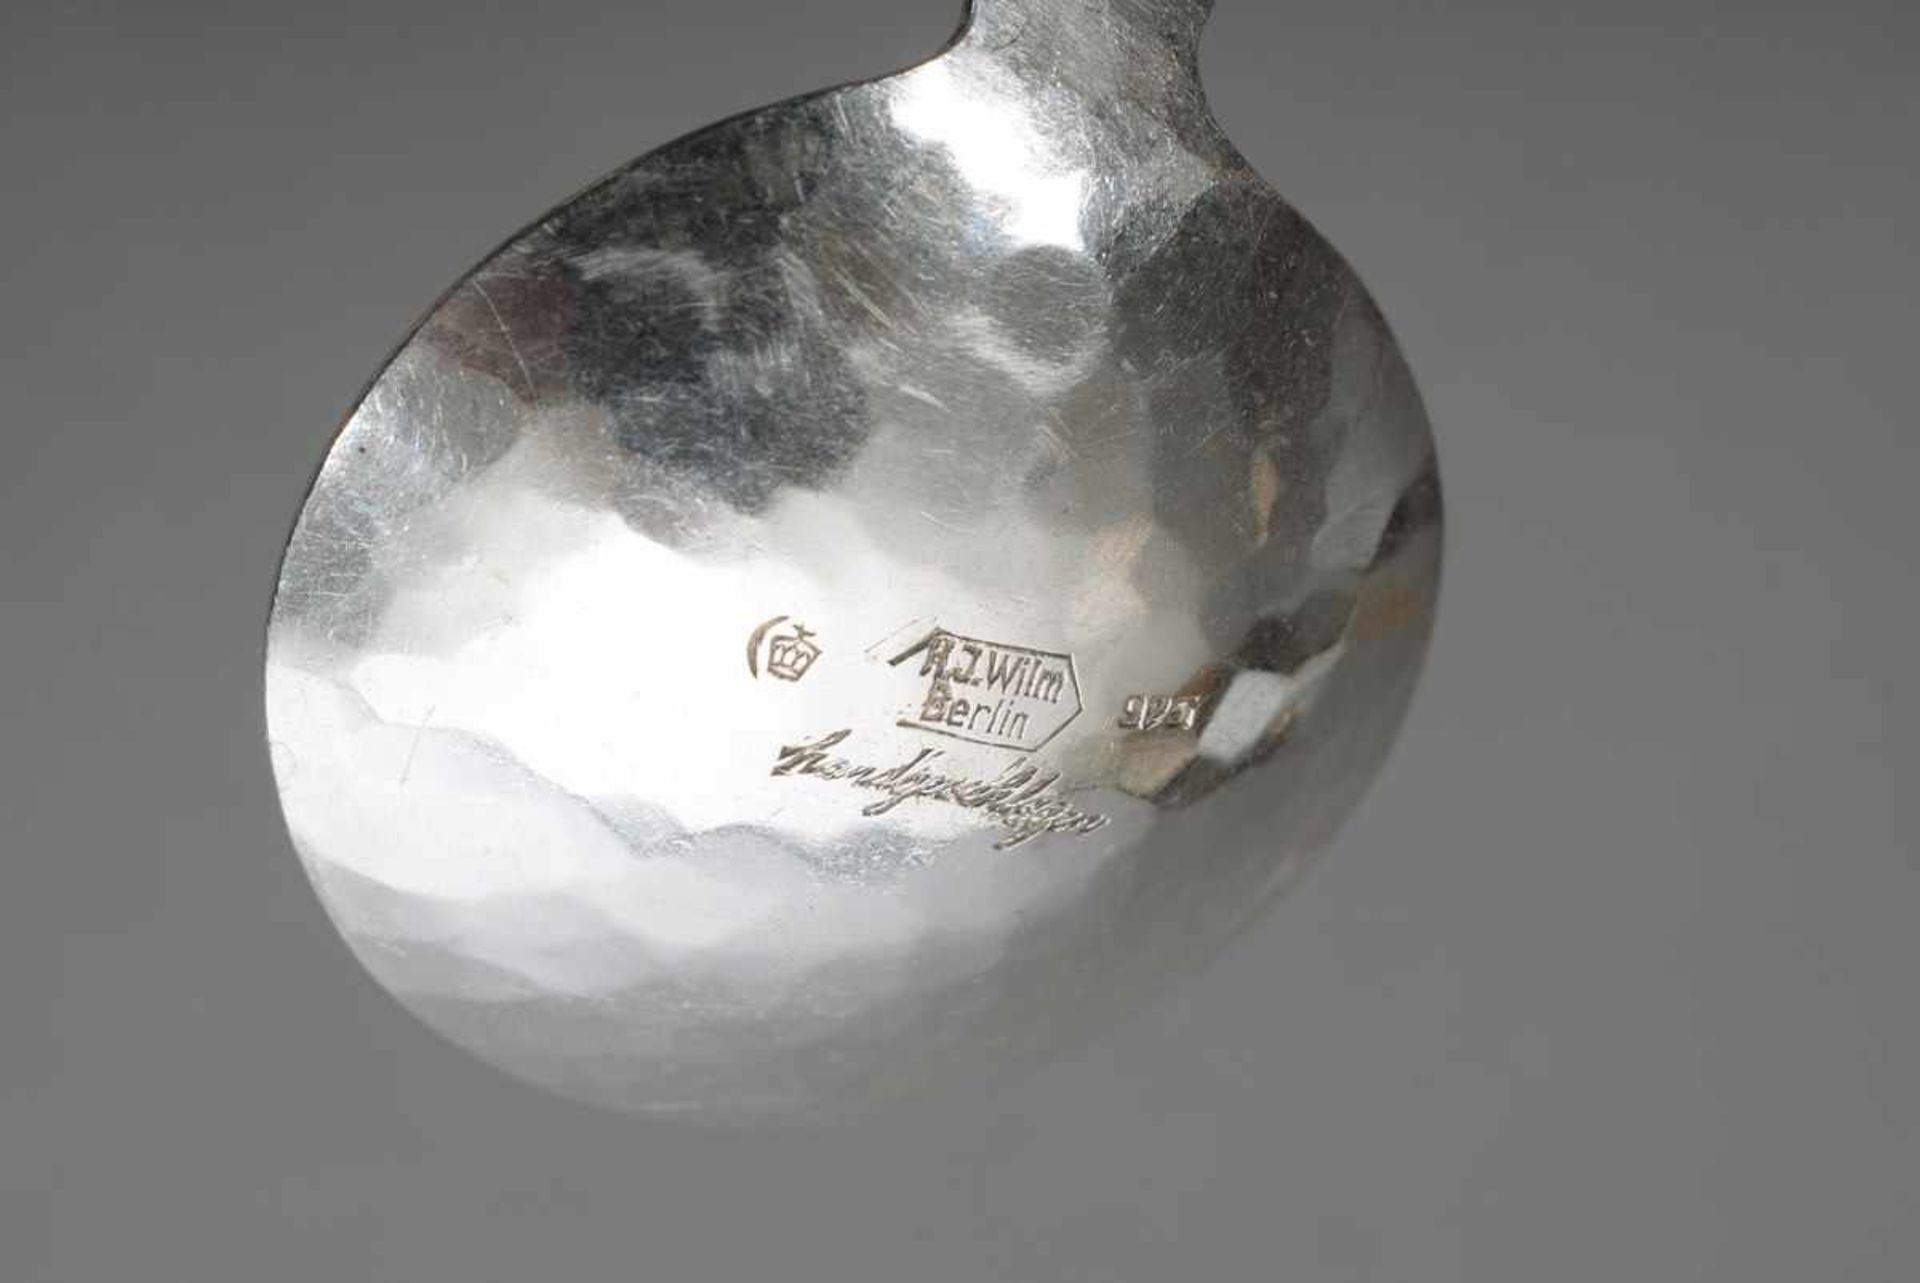 Portionslöffel für Tee mit Blattförmigem Griff, Wilm, Silber 925, 19,5g, L. 8cmPortion spoon for tea - Image 3 of 3